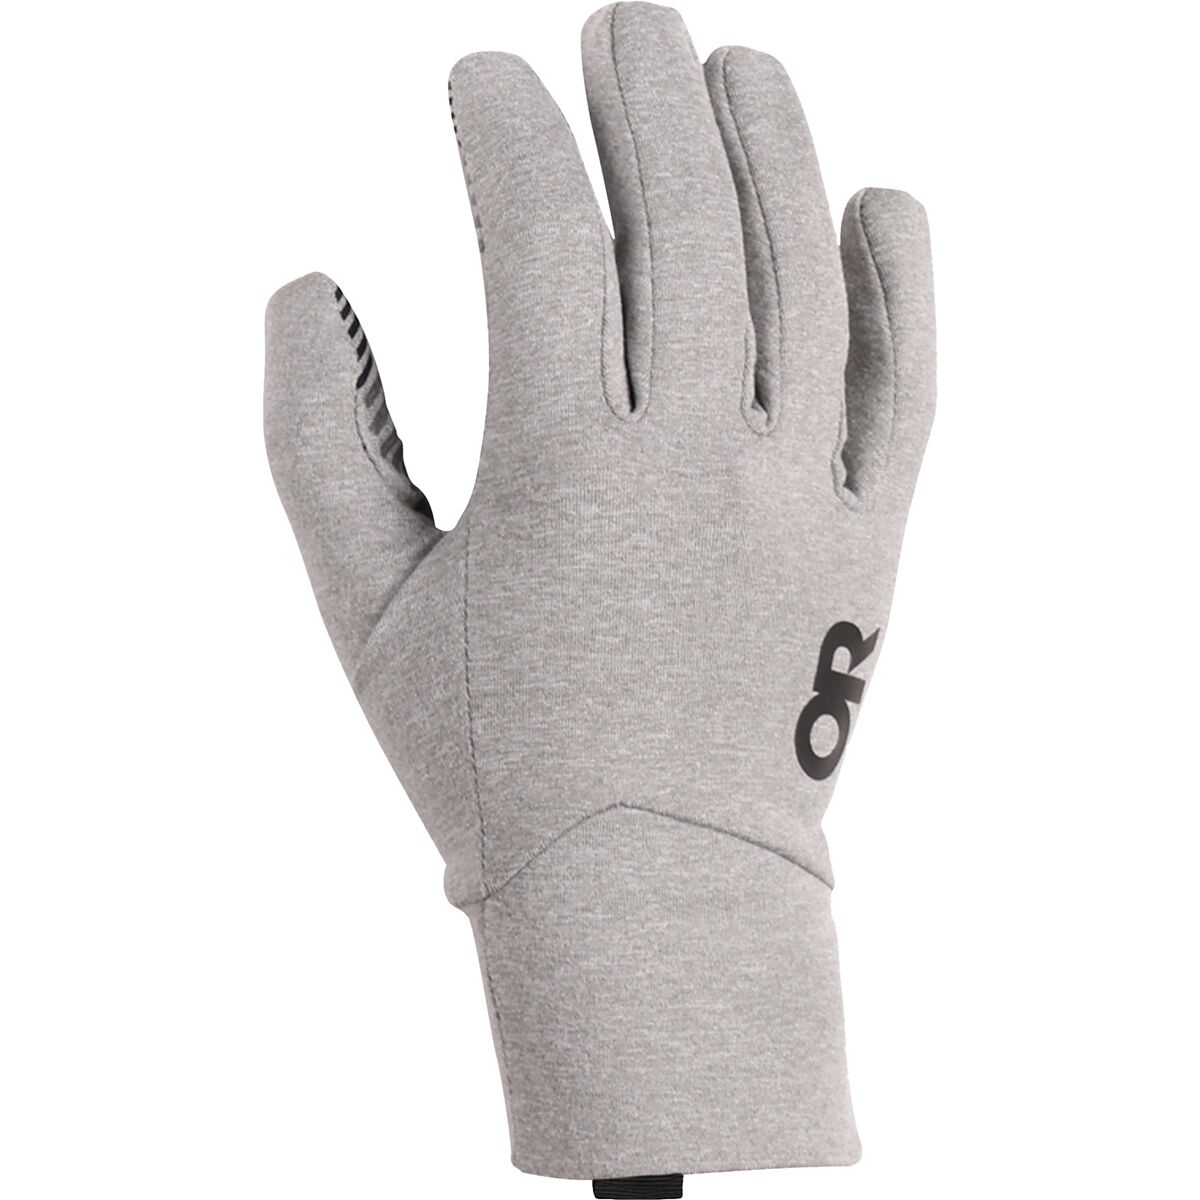 Outdoor Research Vigor Lightweight Sensor Glove - Women's